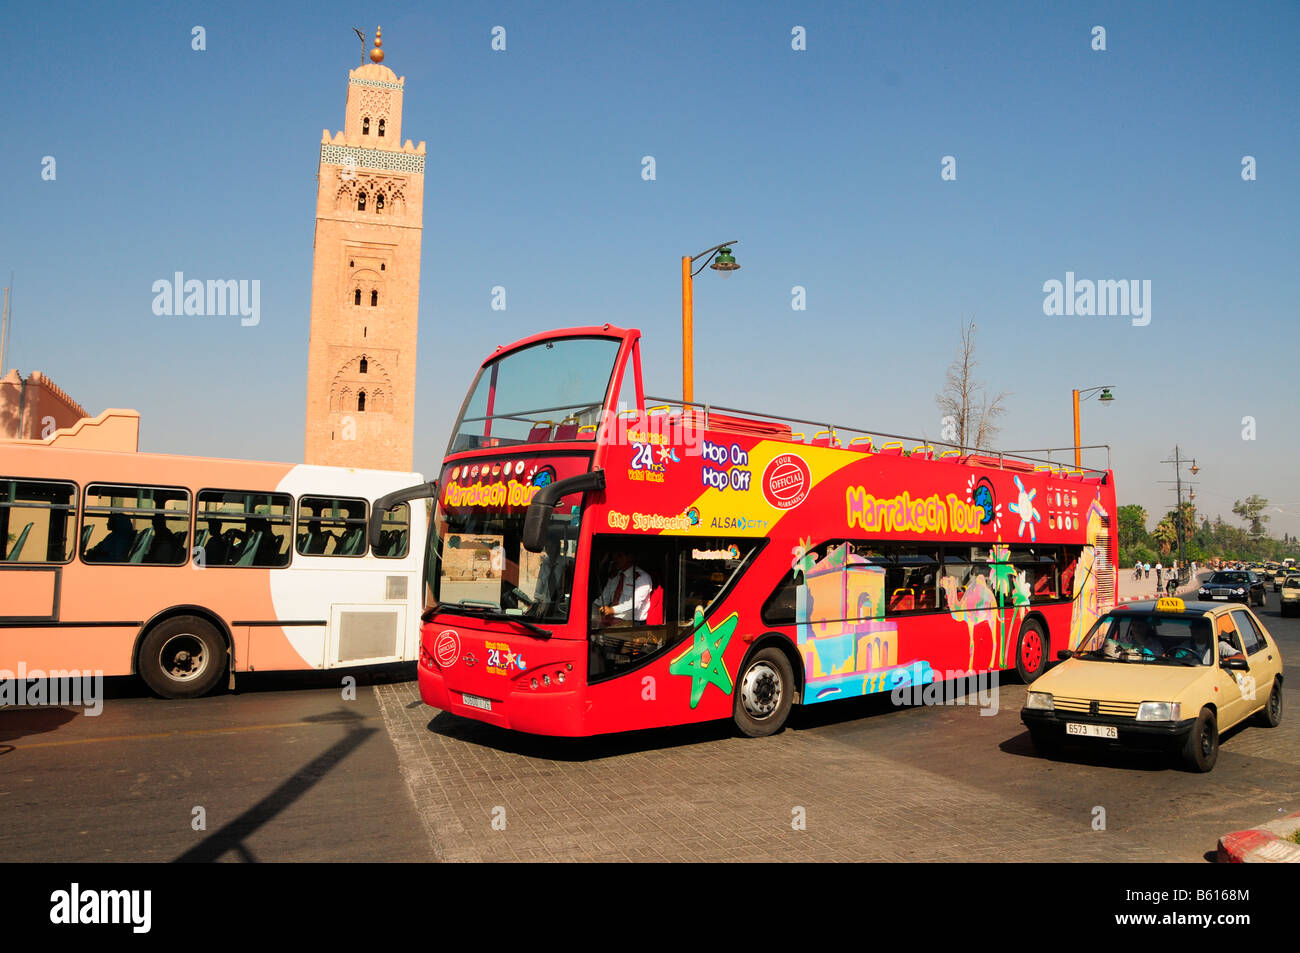 Double-decker open-top bus touristique en face de la Koutoubia, Marrakech, Maroc, Afrique Banque D'Images